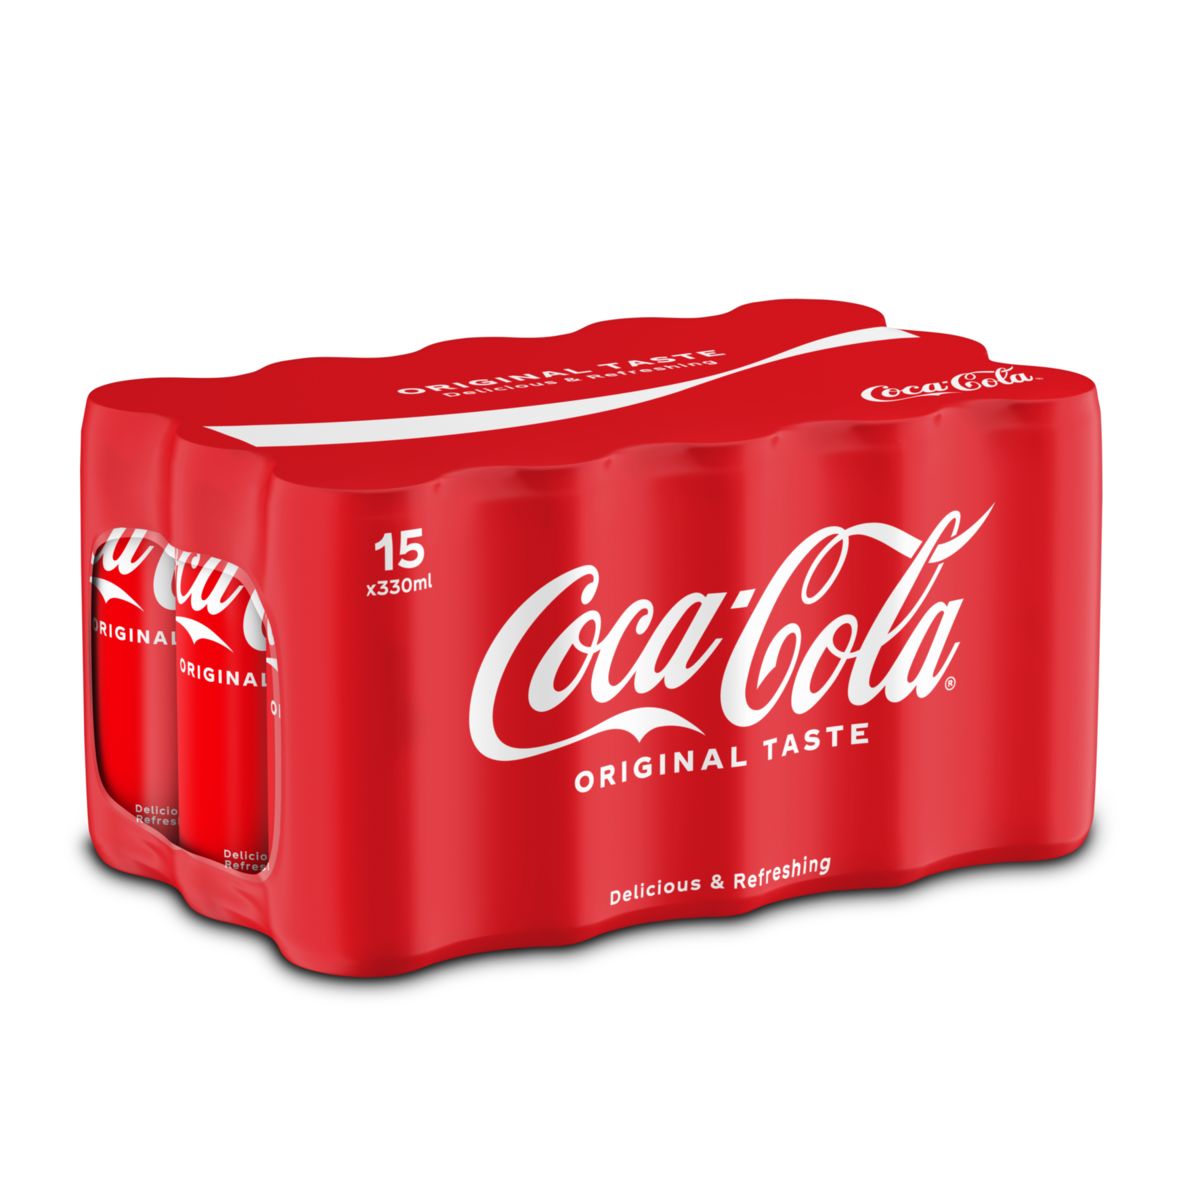 Coca-Cola sleekcan 15 x 330ml